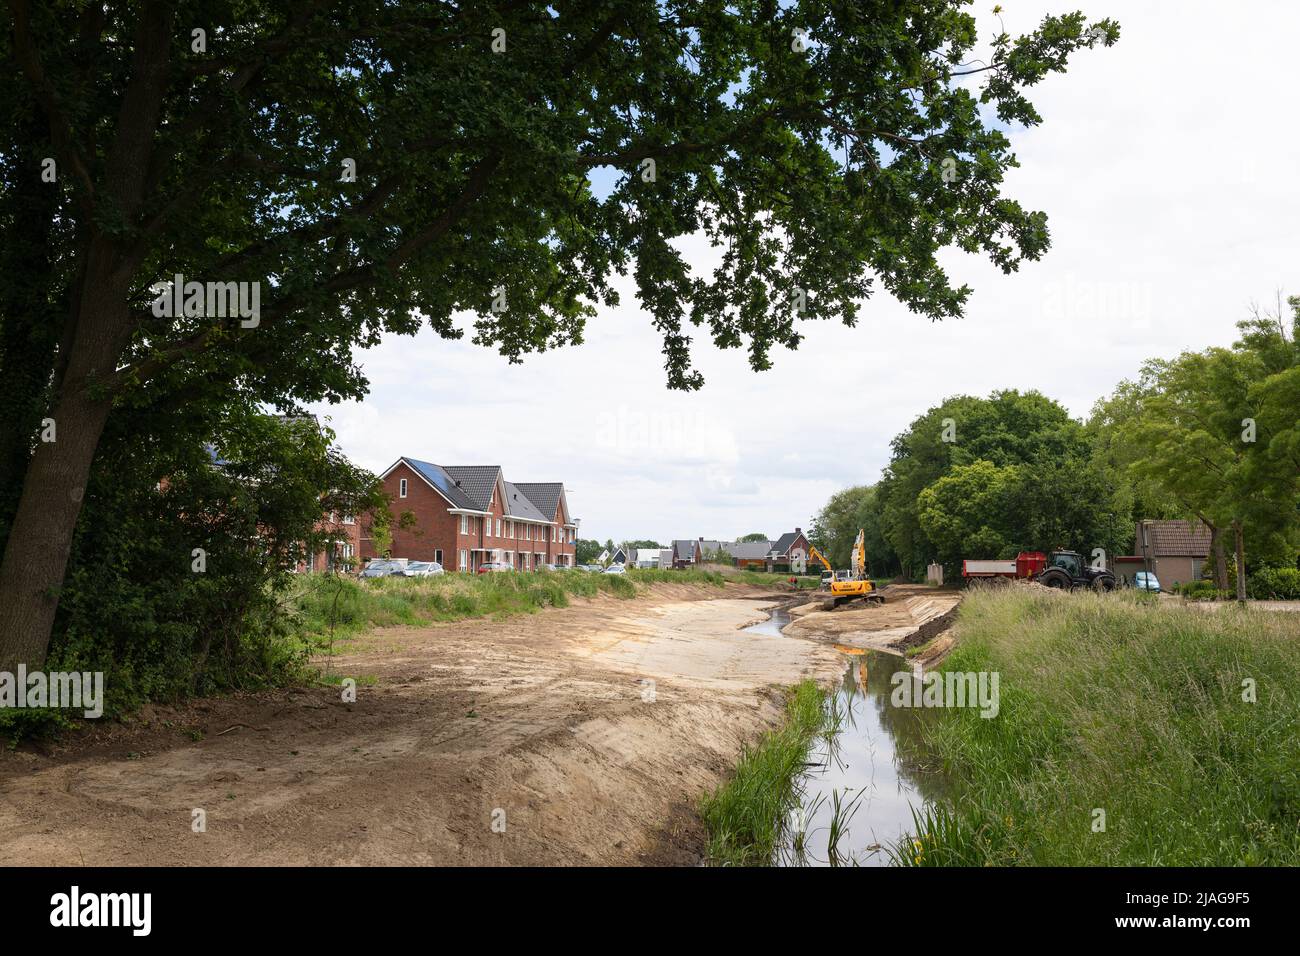 Las excavadoras en funcionamiento que restauran las corrientes de agua canalizadas vuelven a su forma serpenteante en una zona residencial, la gestión del agua en los Países Bajos Foto de stock